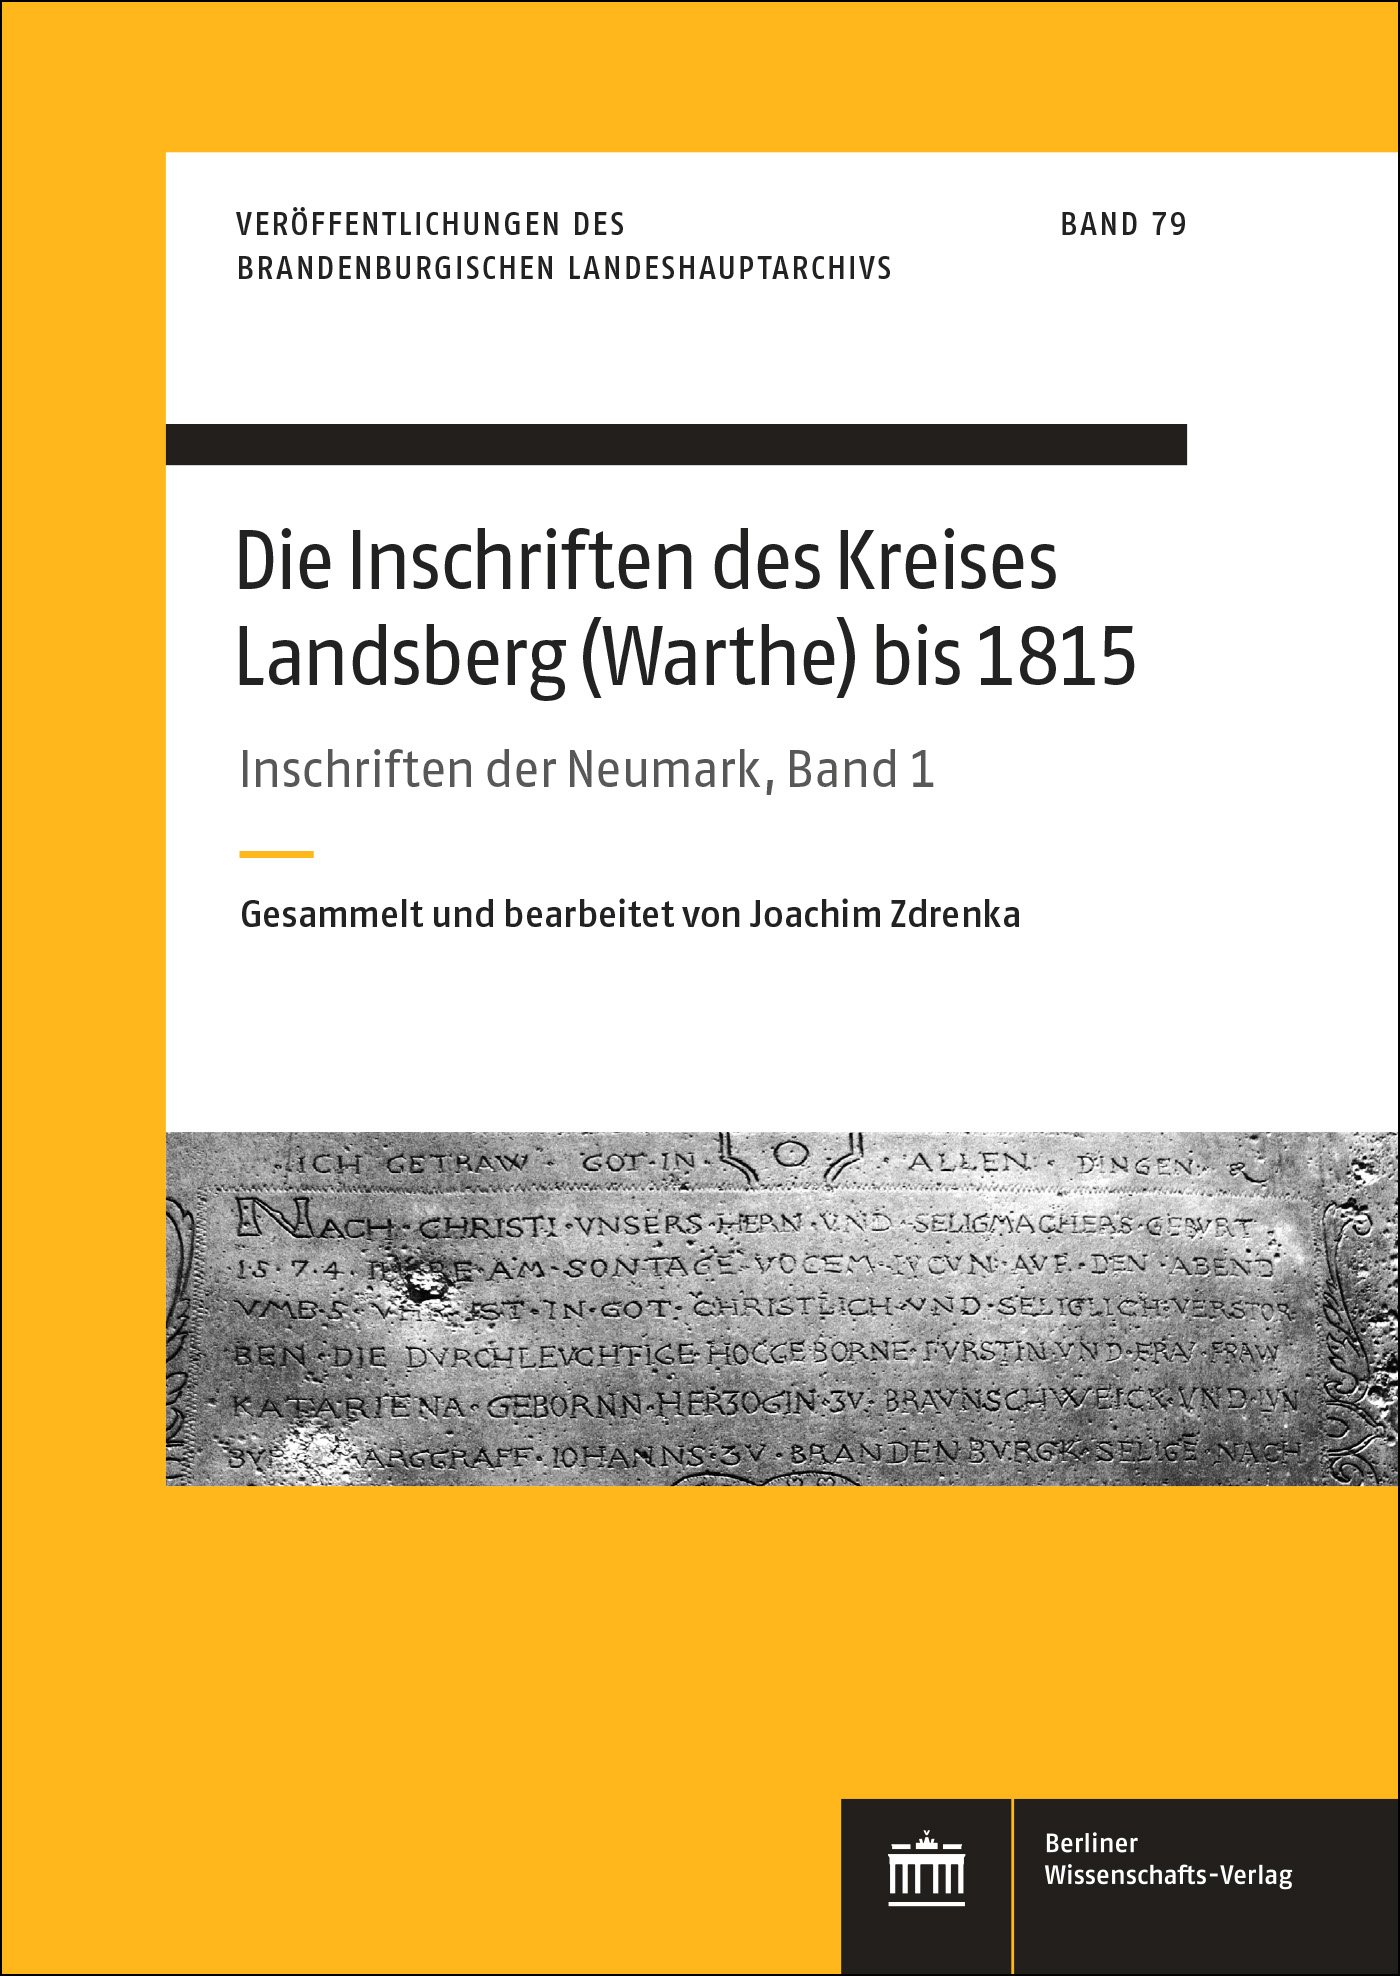 Die Inschriften des Kreises Landsberg (Warthe) bis 1815